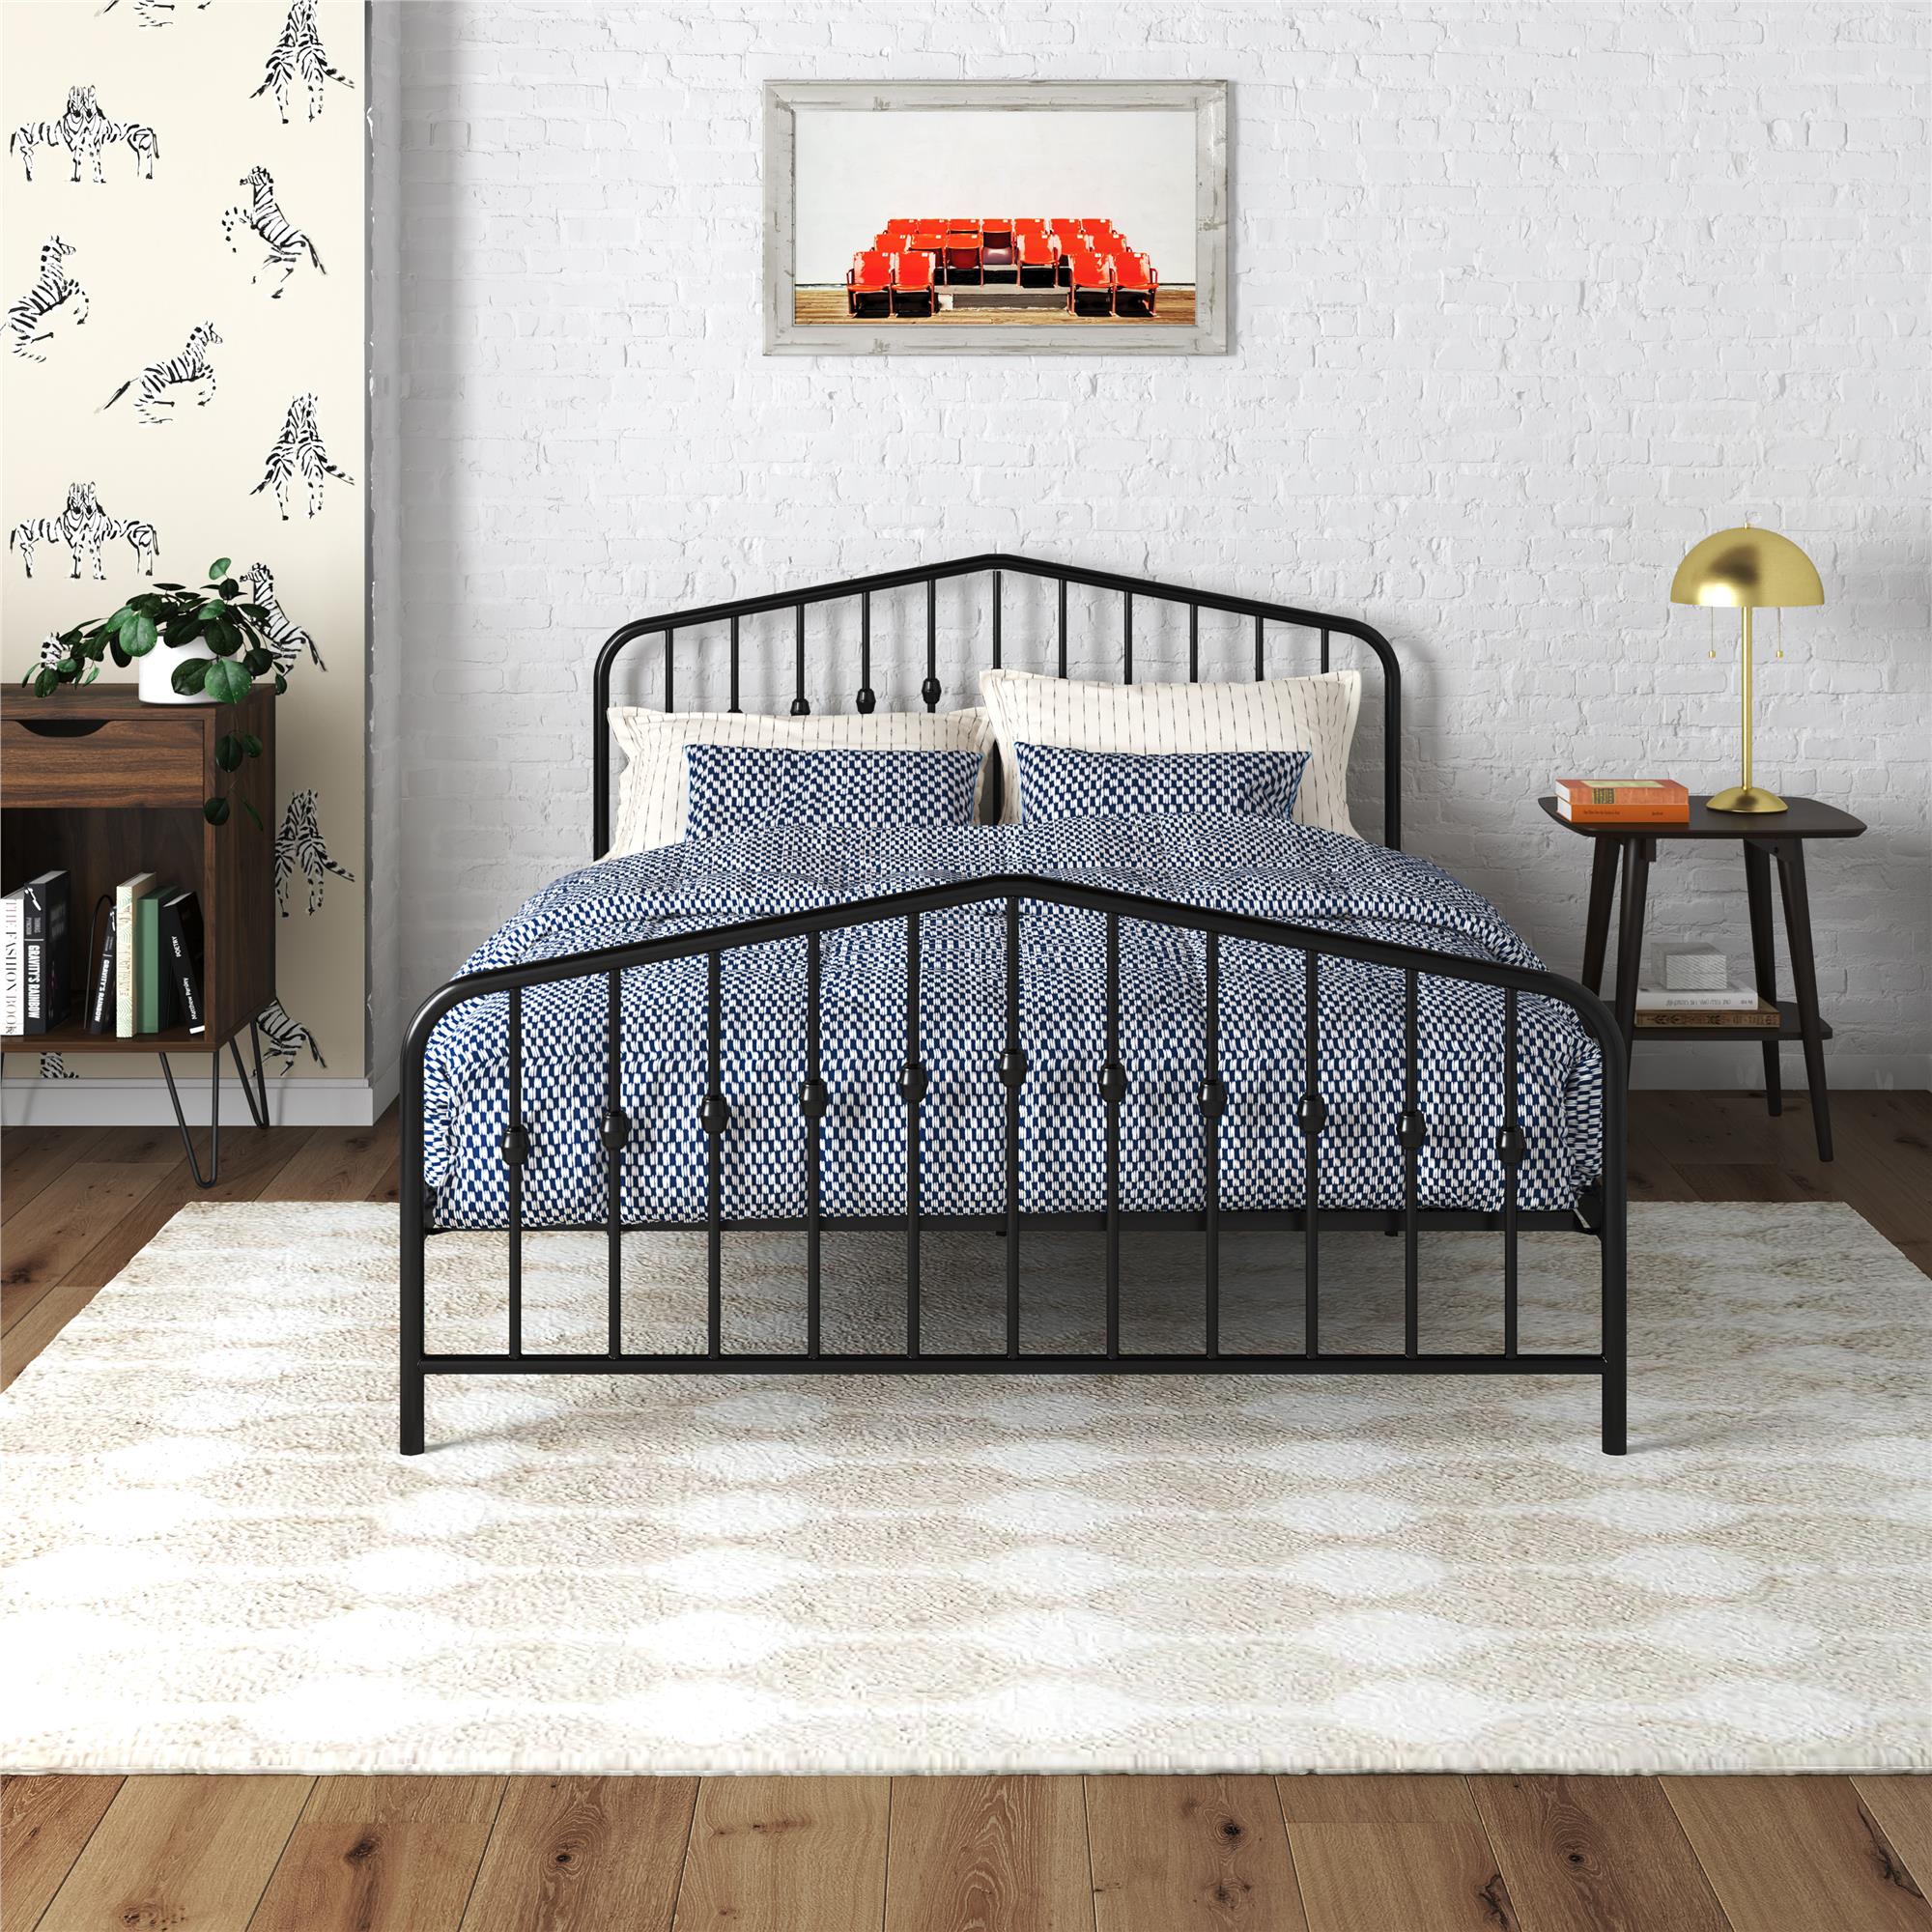 Novogratz Bushwick Metal Platform Bed and Adjustable Frame, Full, Black - image 3 of 19